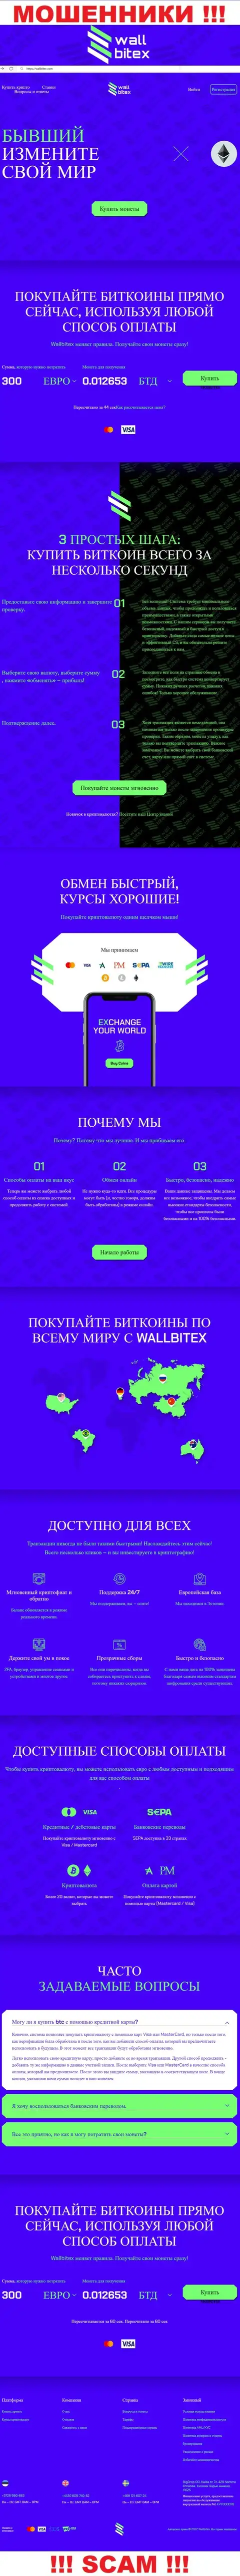 WallBitex Com - это официальный информационный портал жульнической организации WallBitex